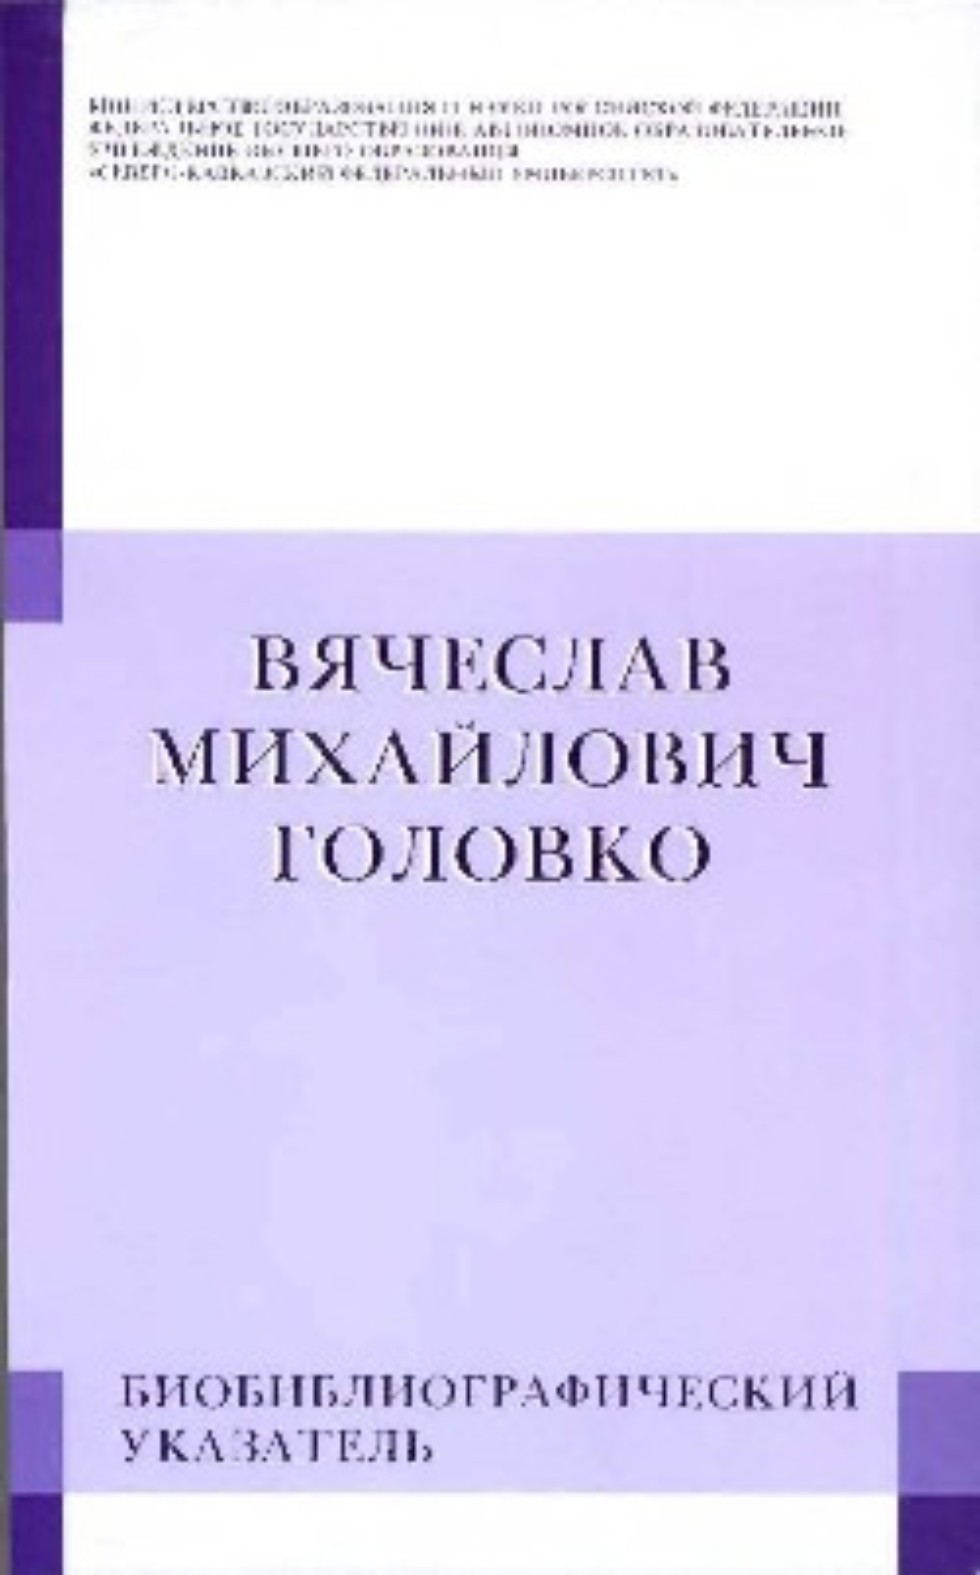 Библиотека института получила в дар научные труды В. М. Головко